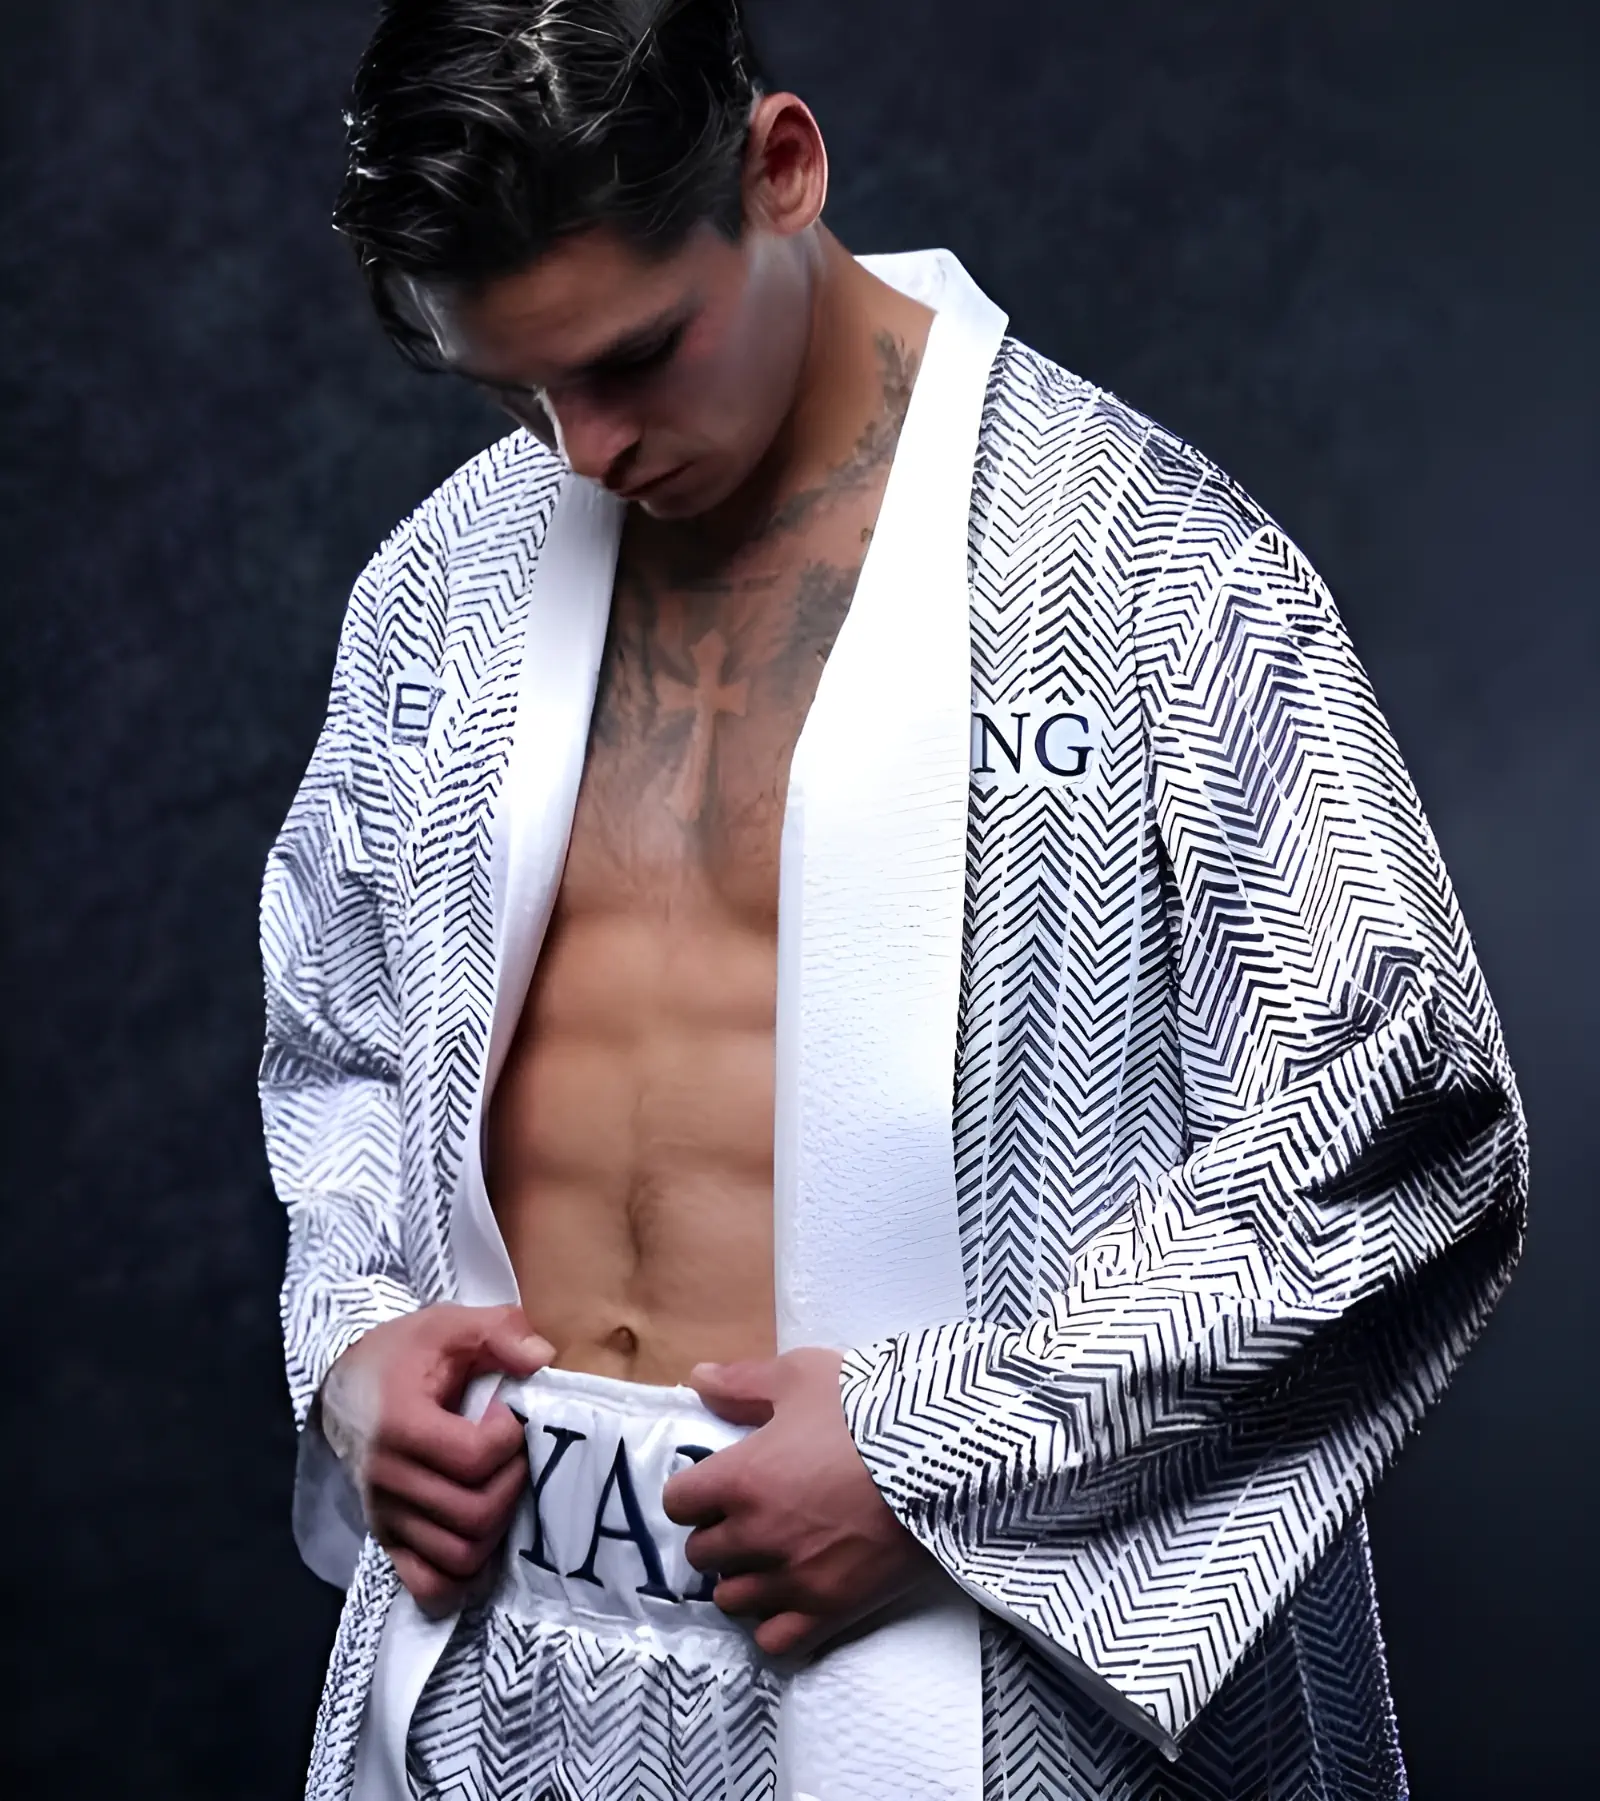 Le boxeur Ryan Garcia a enfilé une tenue Emporio Armani personnalisée pour son combat de samedi dernier